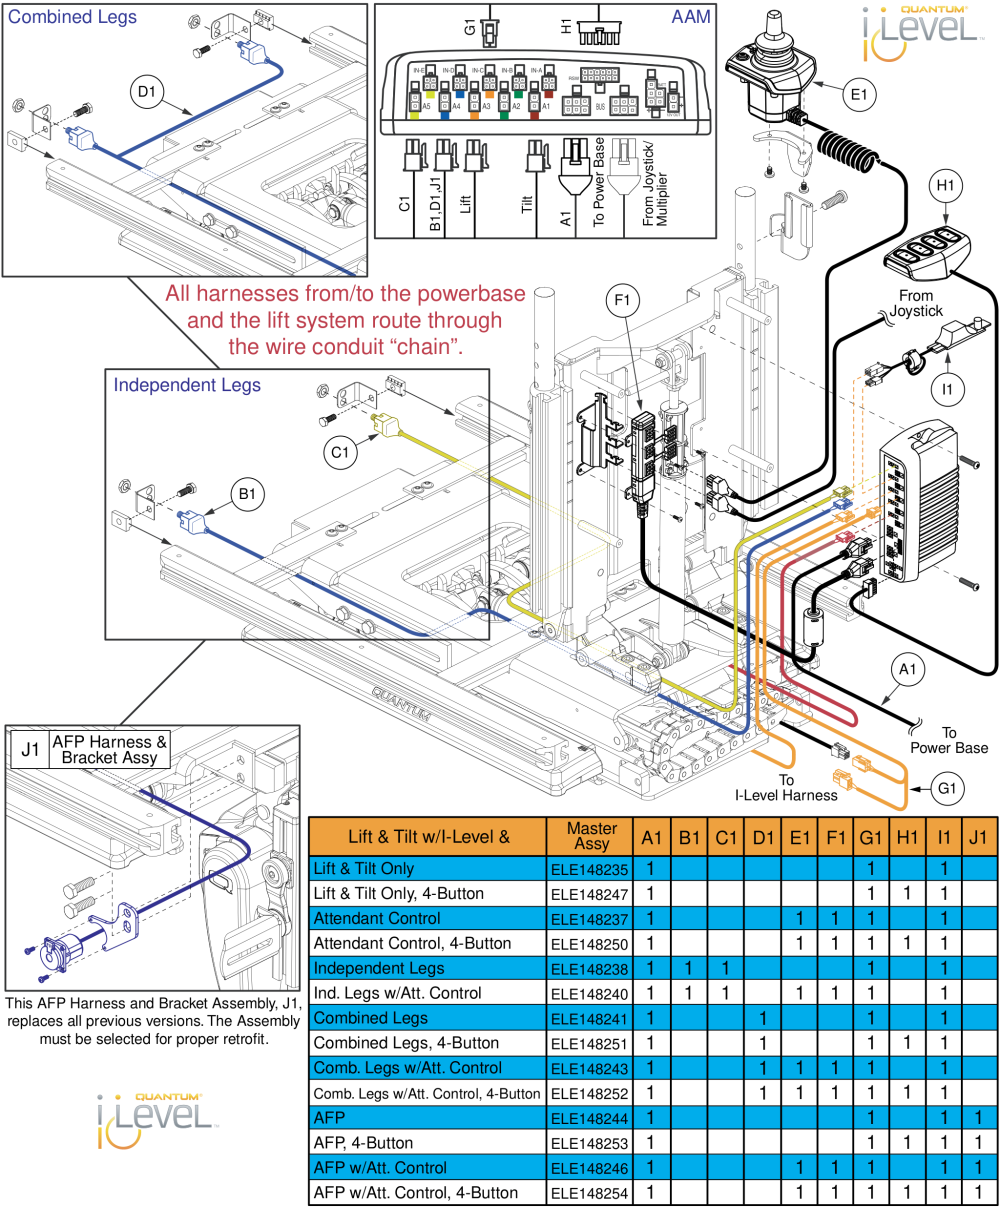 Lift & Tilt Harnessing, Q-logic 2 - Reac Lift / I-level parts diagram